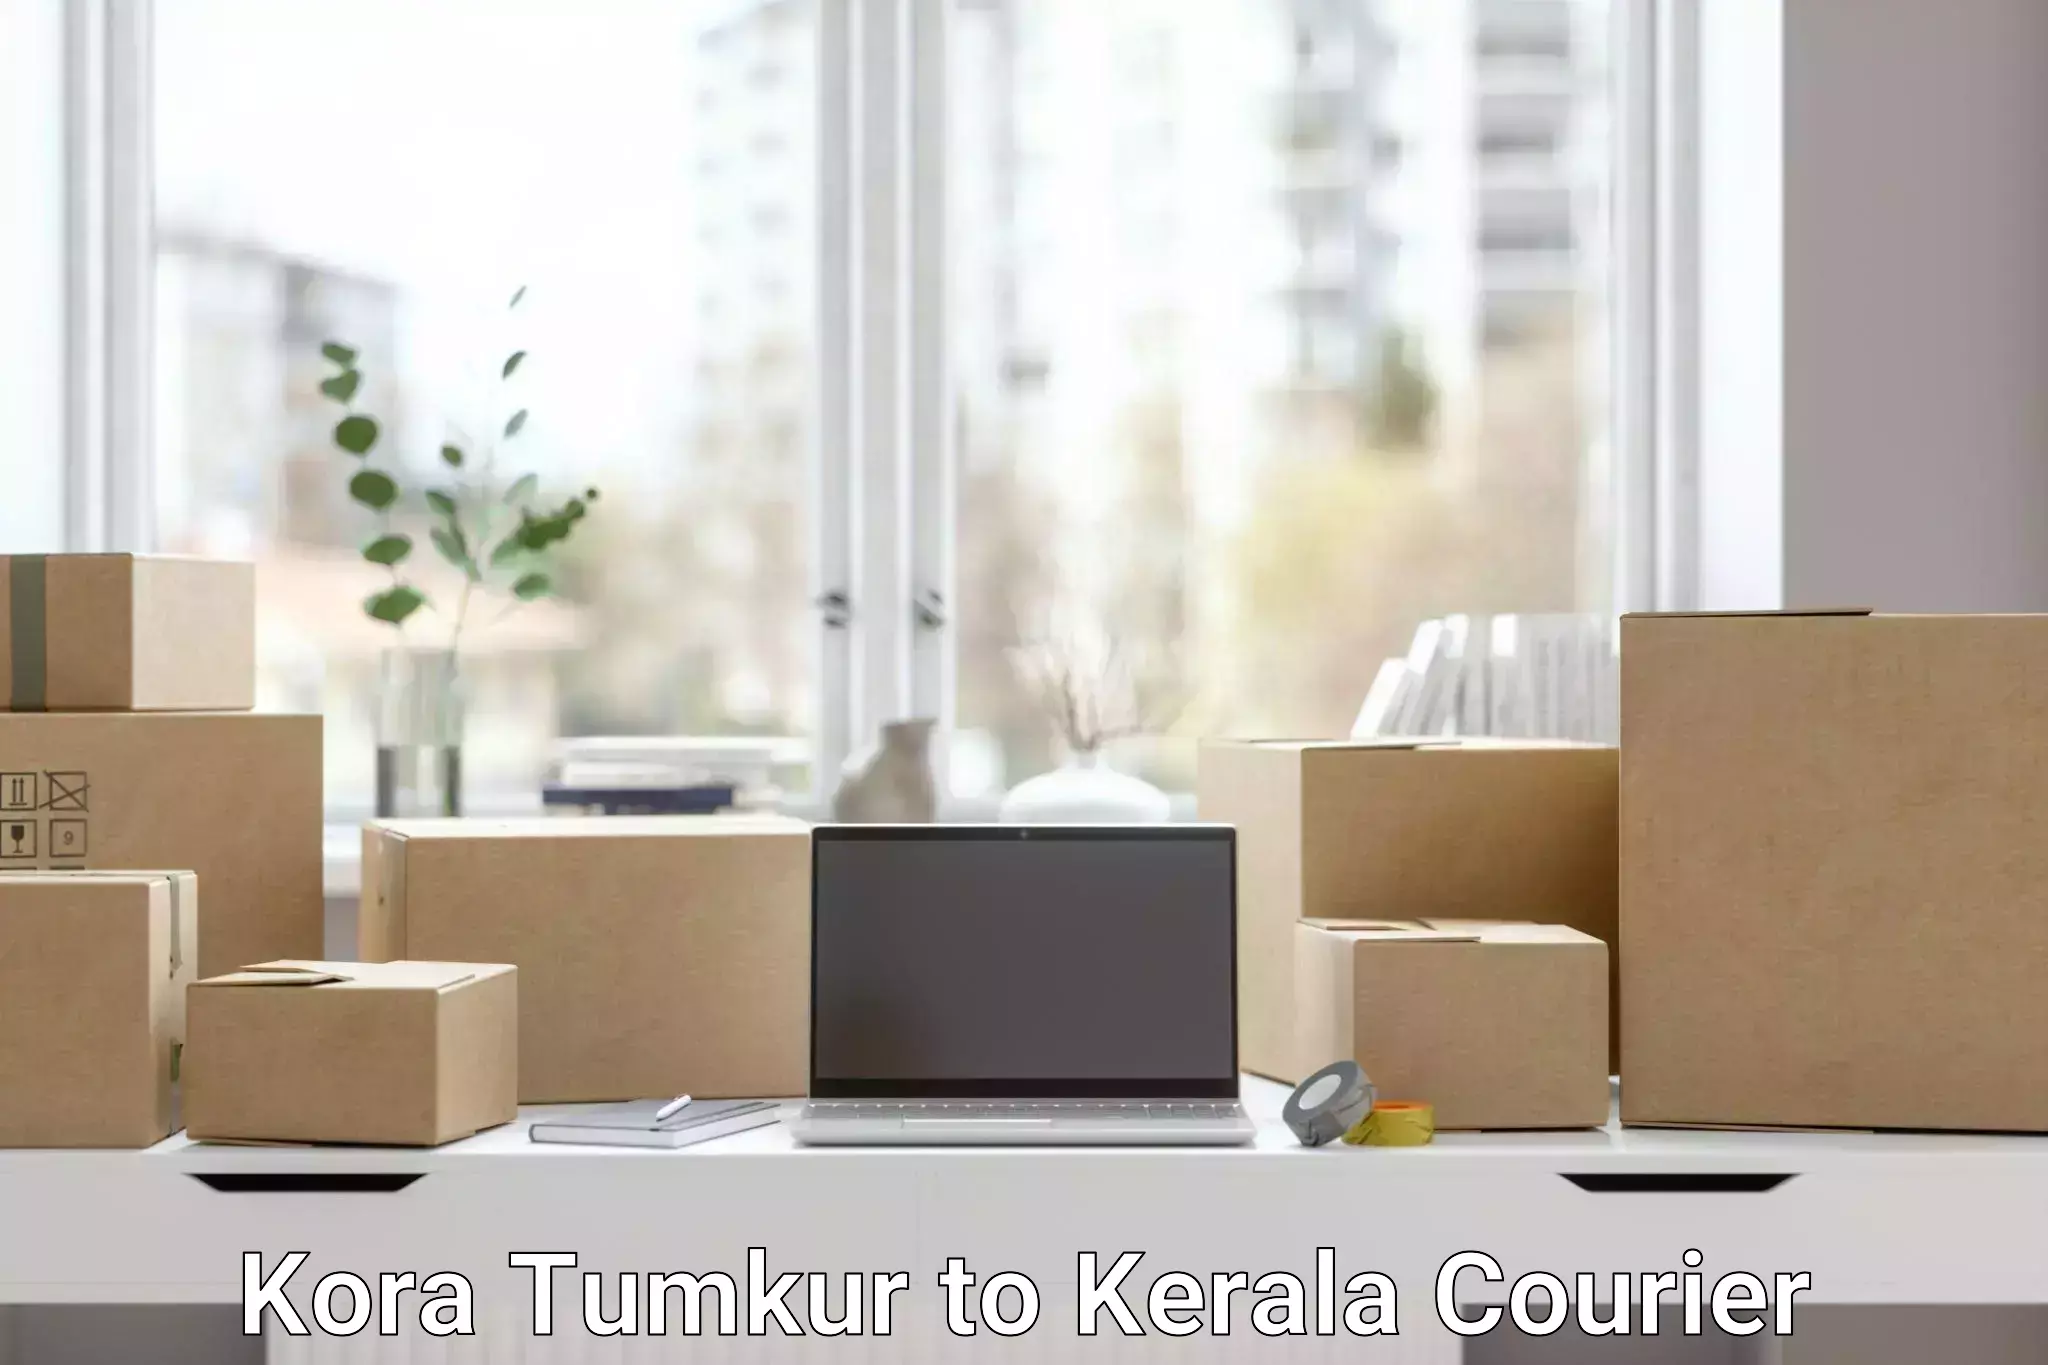 Sustainable courier practices Kora Tumkur to Kottarakkara